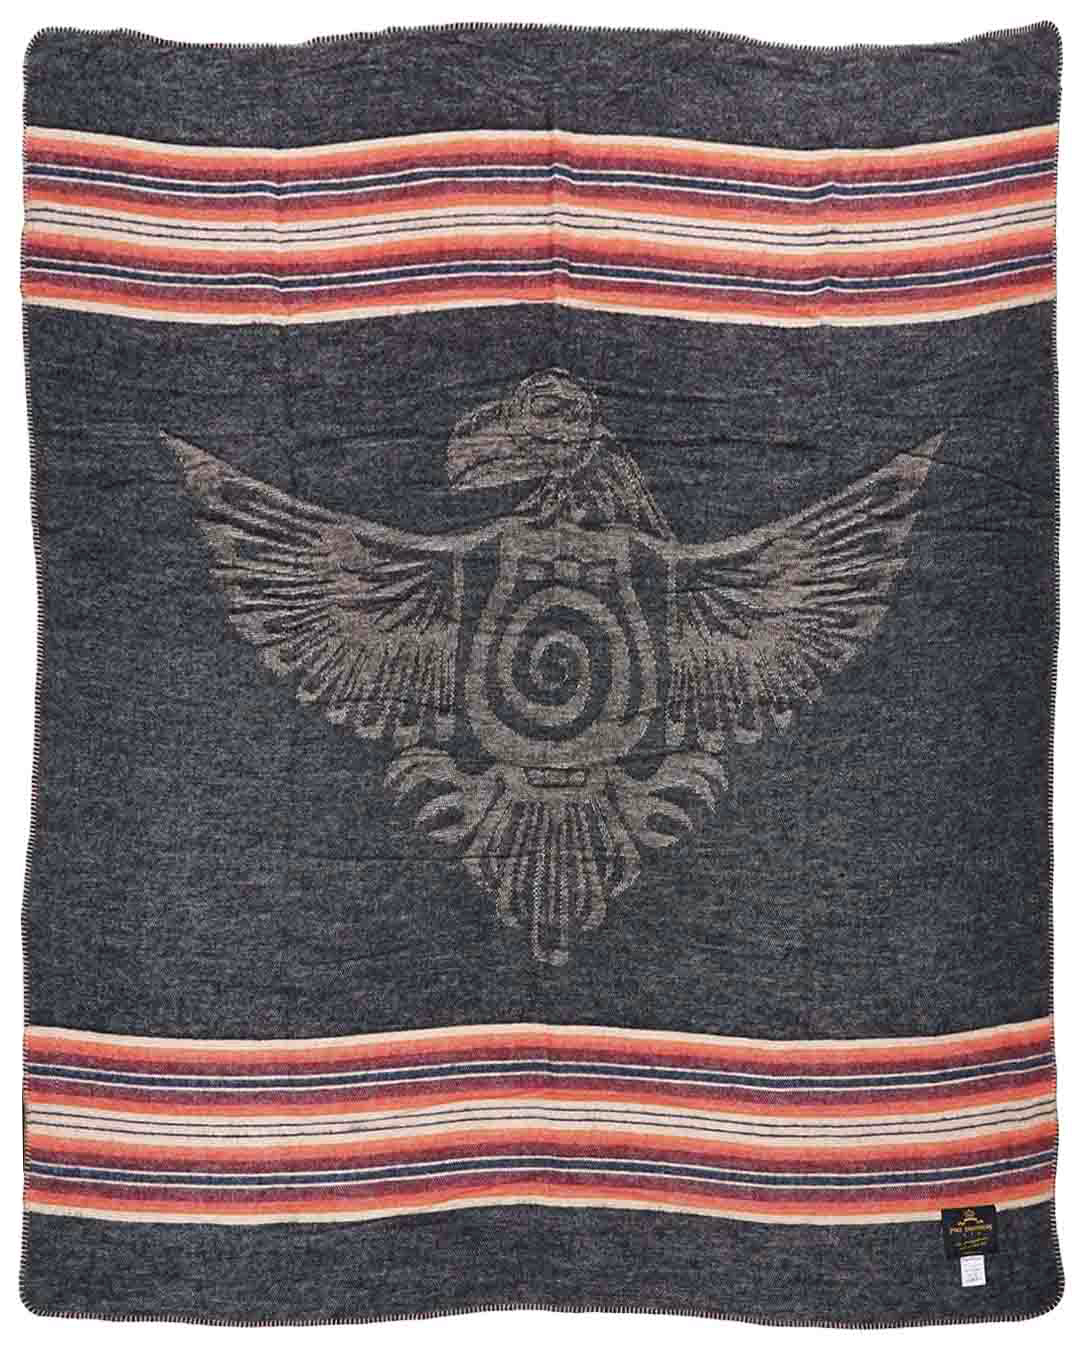 1969 Denakatee Depakatè wool blanket faded black